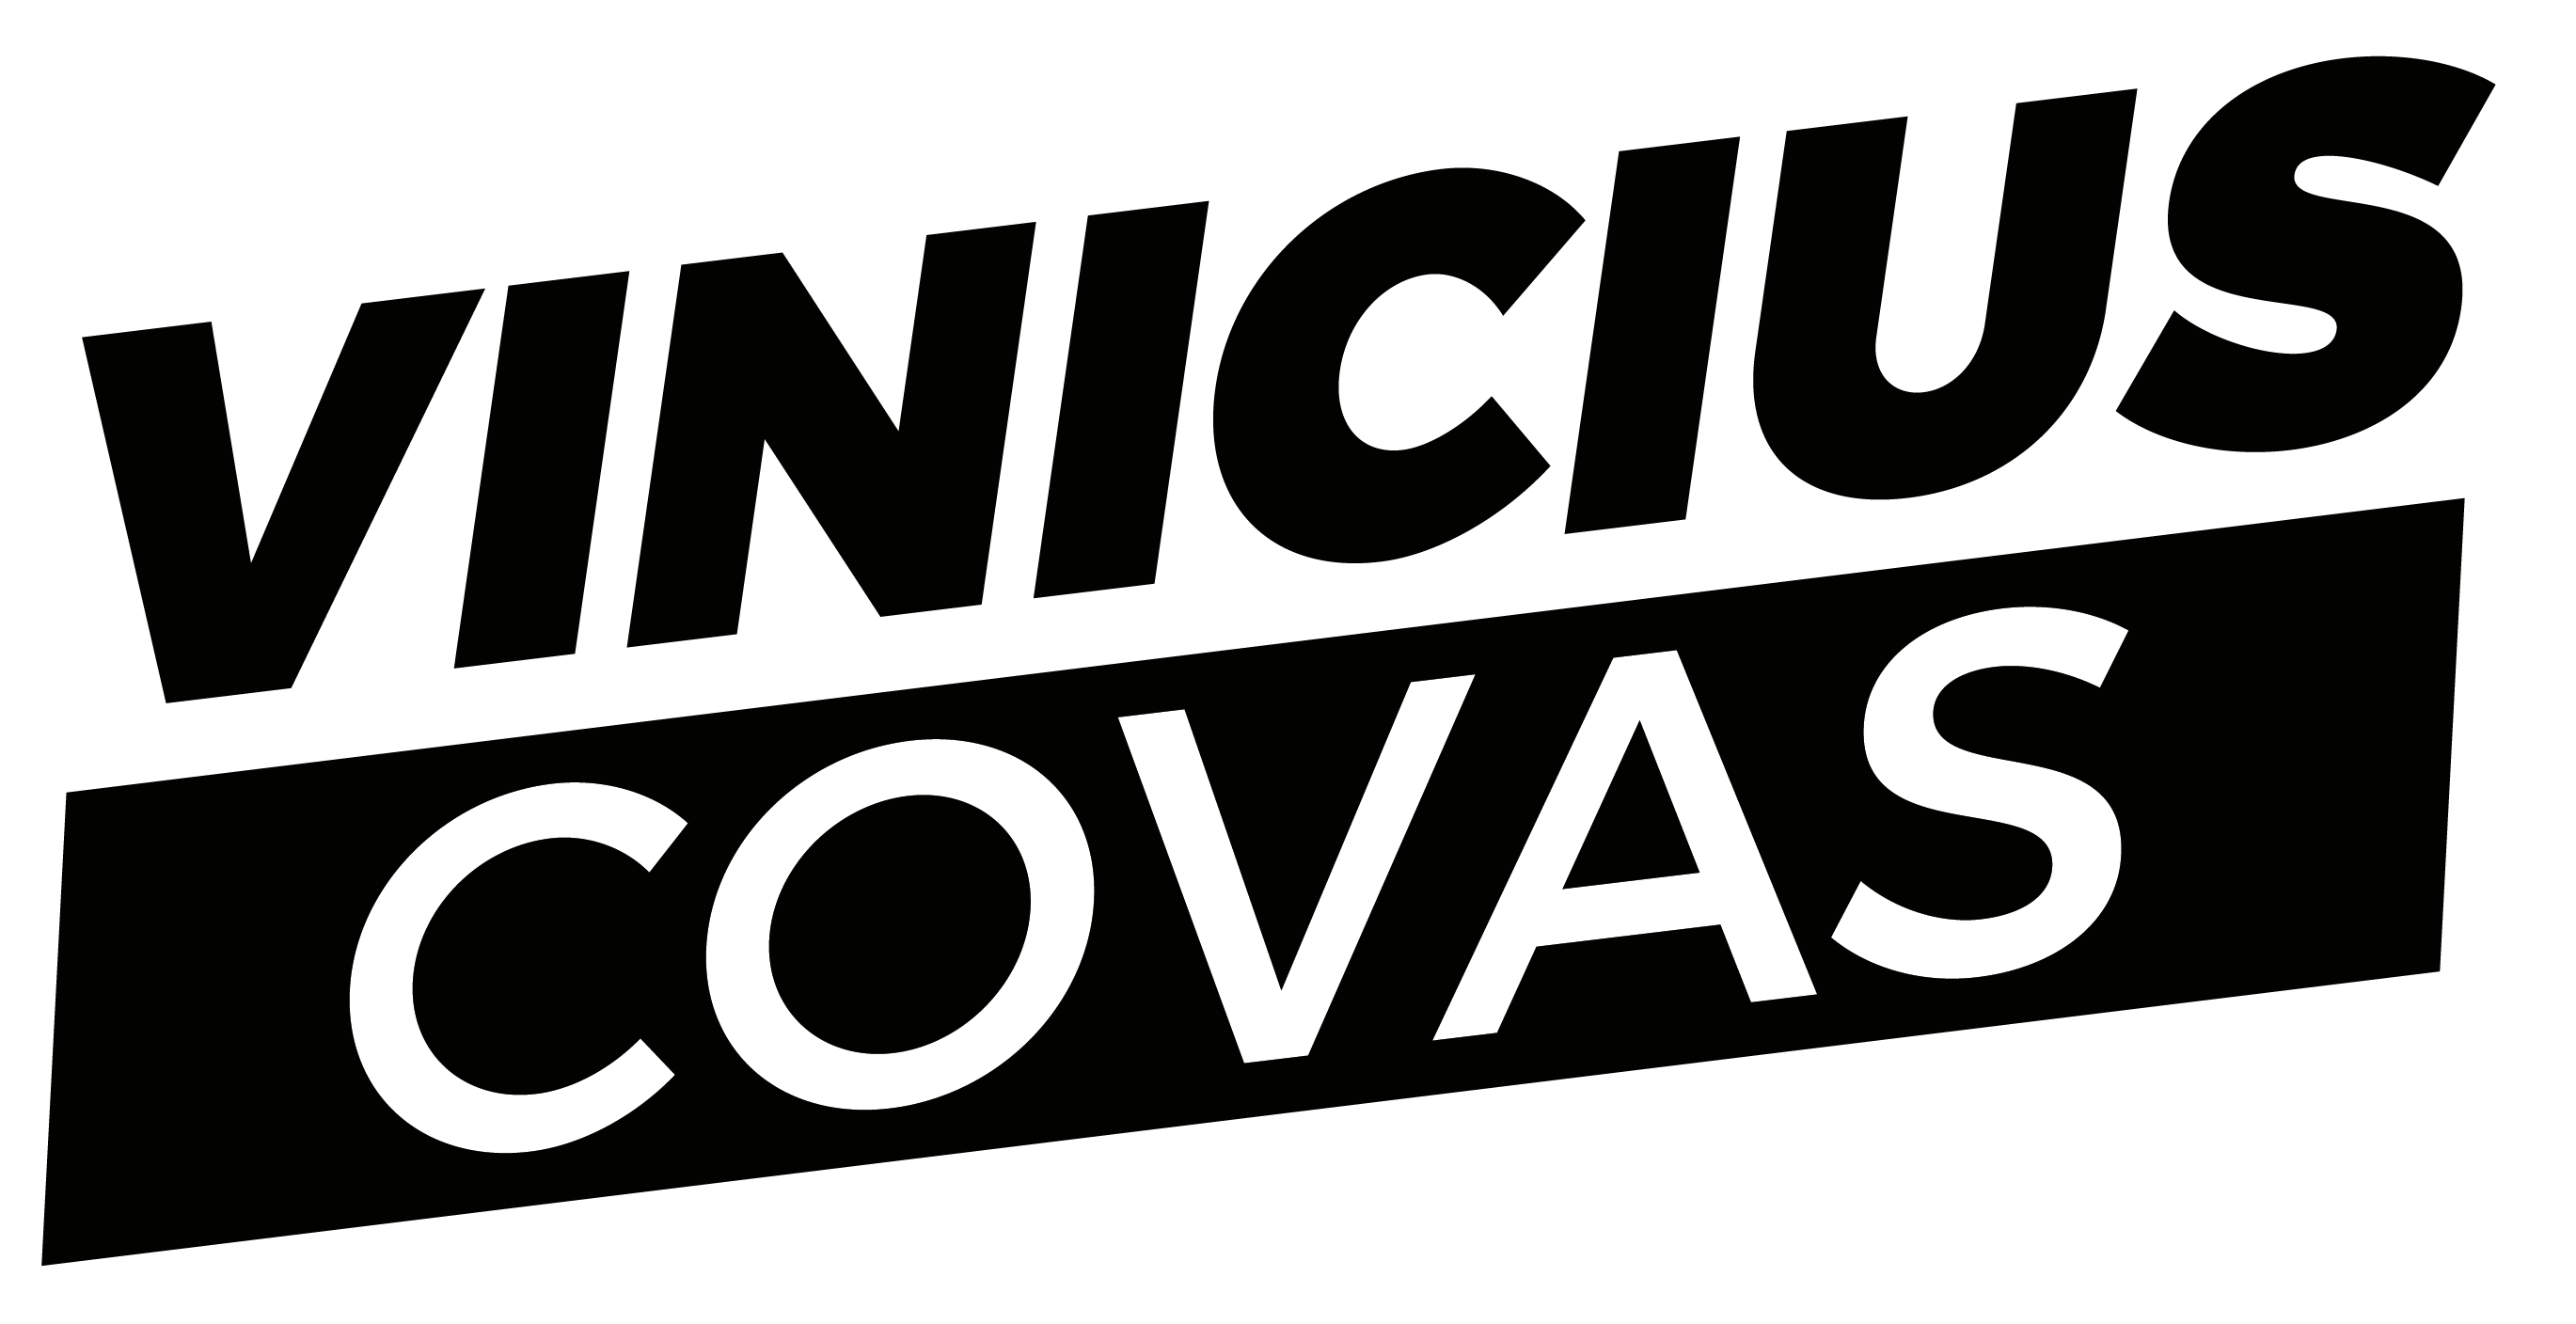 Vinicius Covas